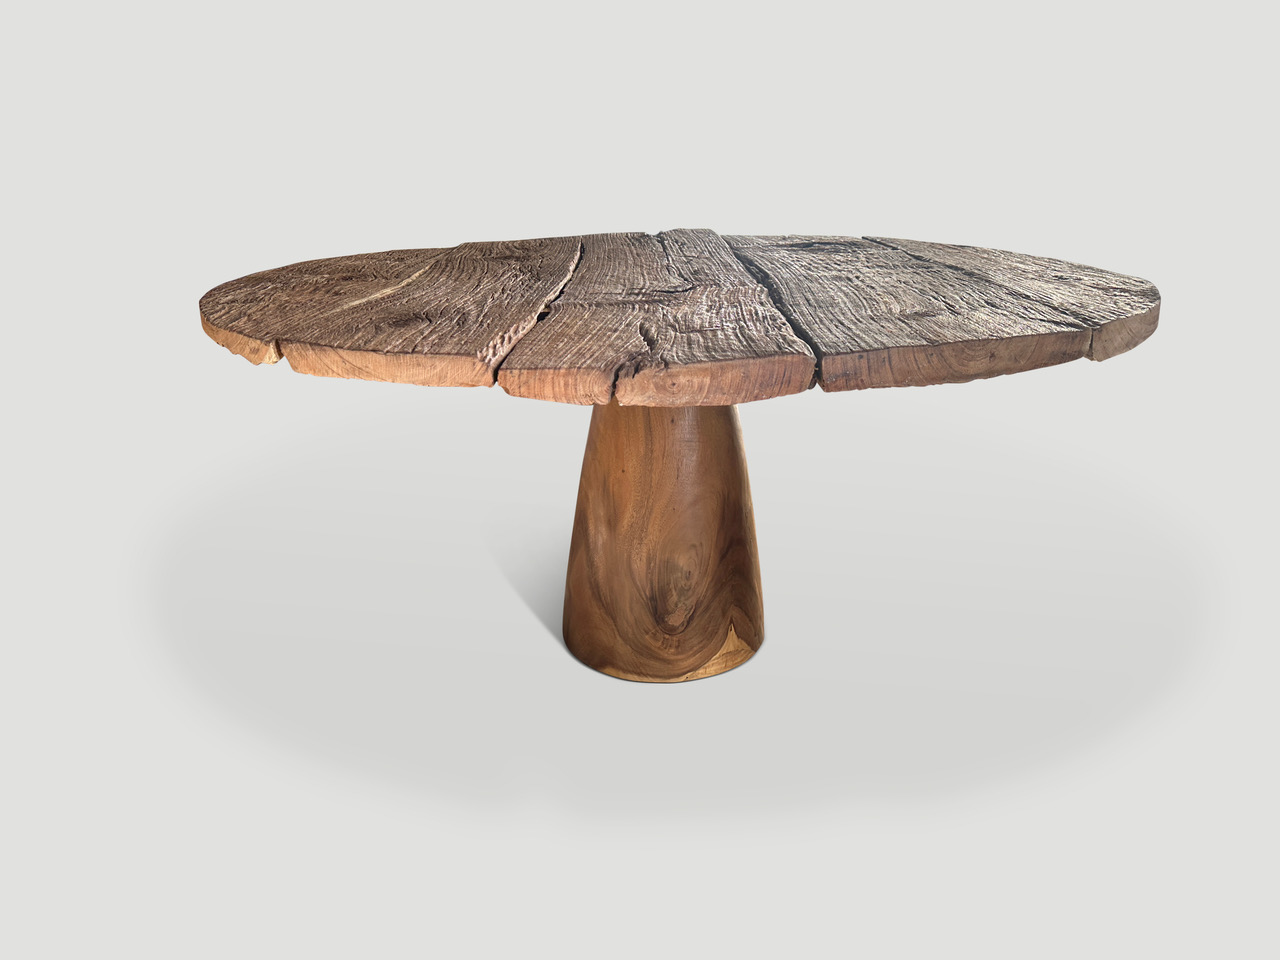 impressive round teak wood table